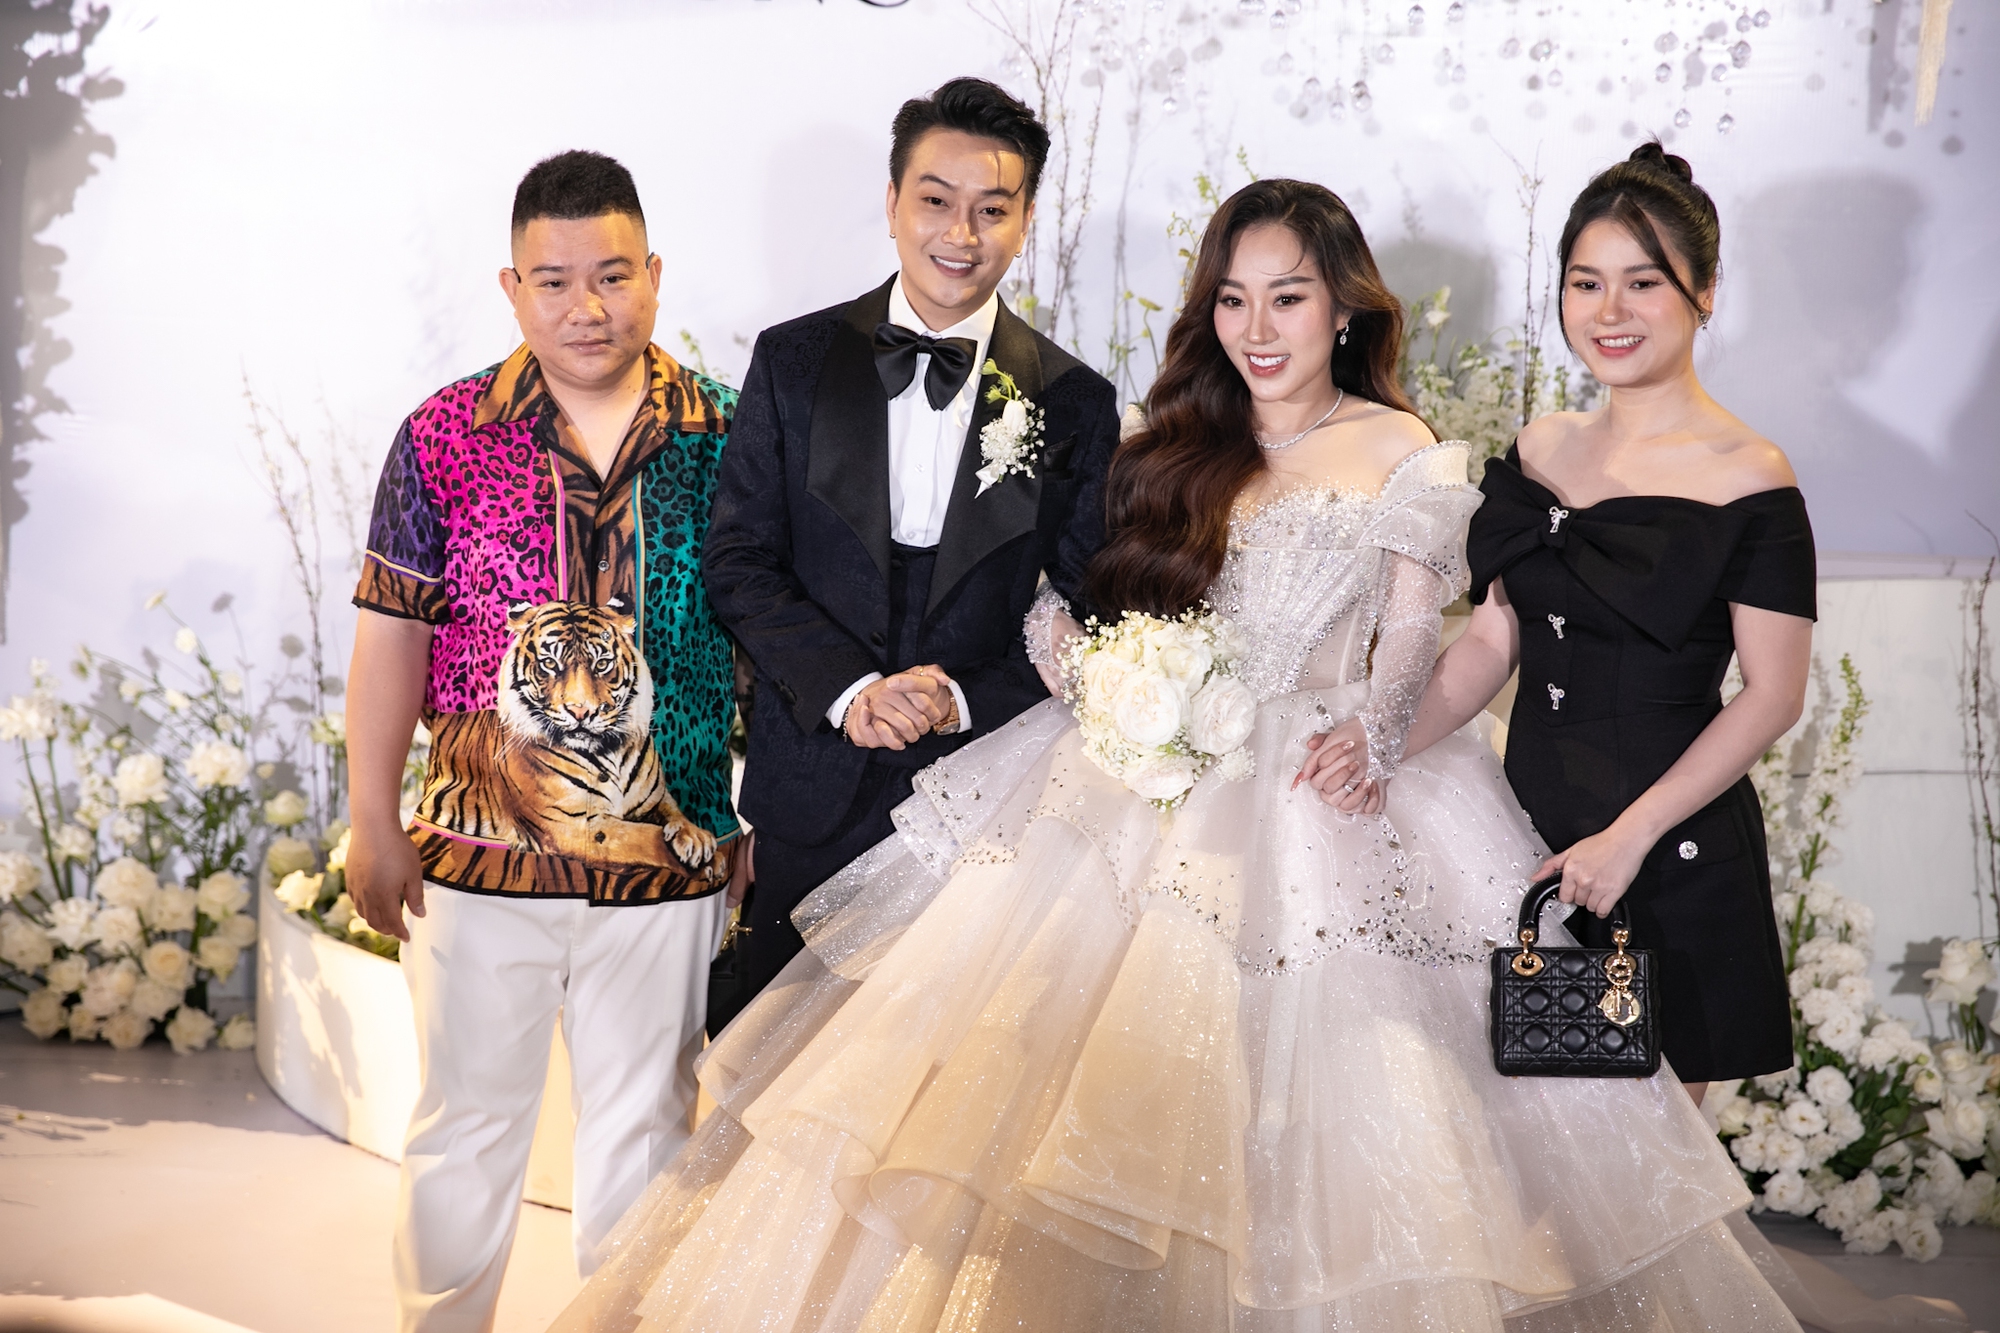 Đám cưới TiTi (HKT): Cô dâu chú rể trao nụ hôn cực ngọt, Tiến Luật - Lâm Vỹ Dạ và dàn sao Vbiz đổ bộ chúc mừng - Ảnh 6.